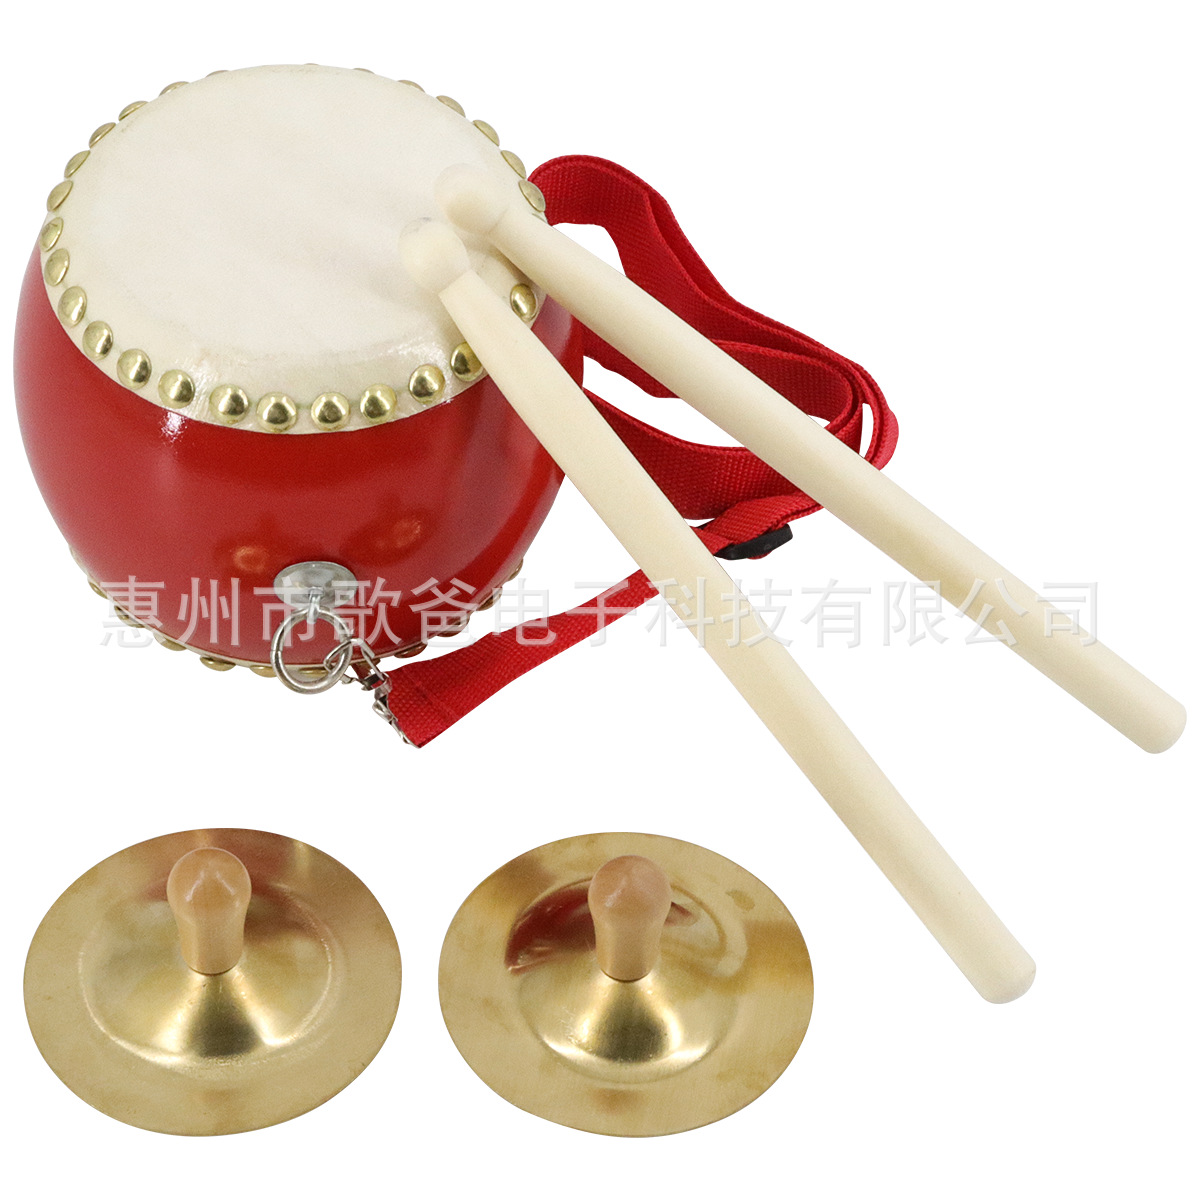 乐器配件  儿童鼓和铜色喇叭响铃套装图